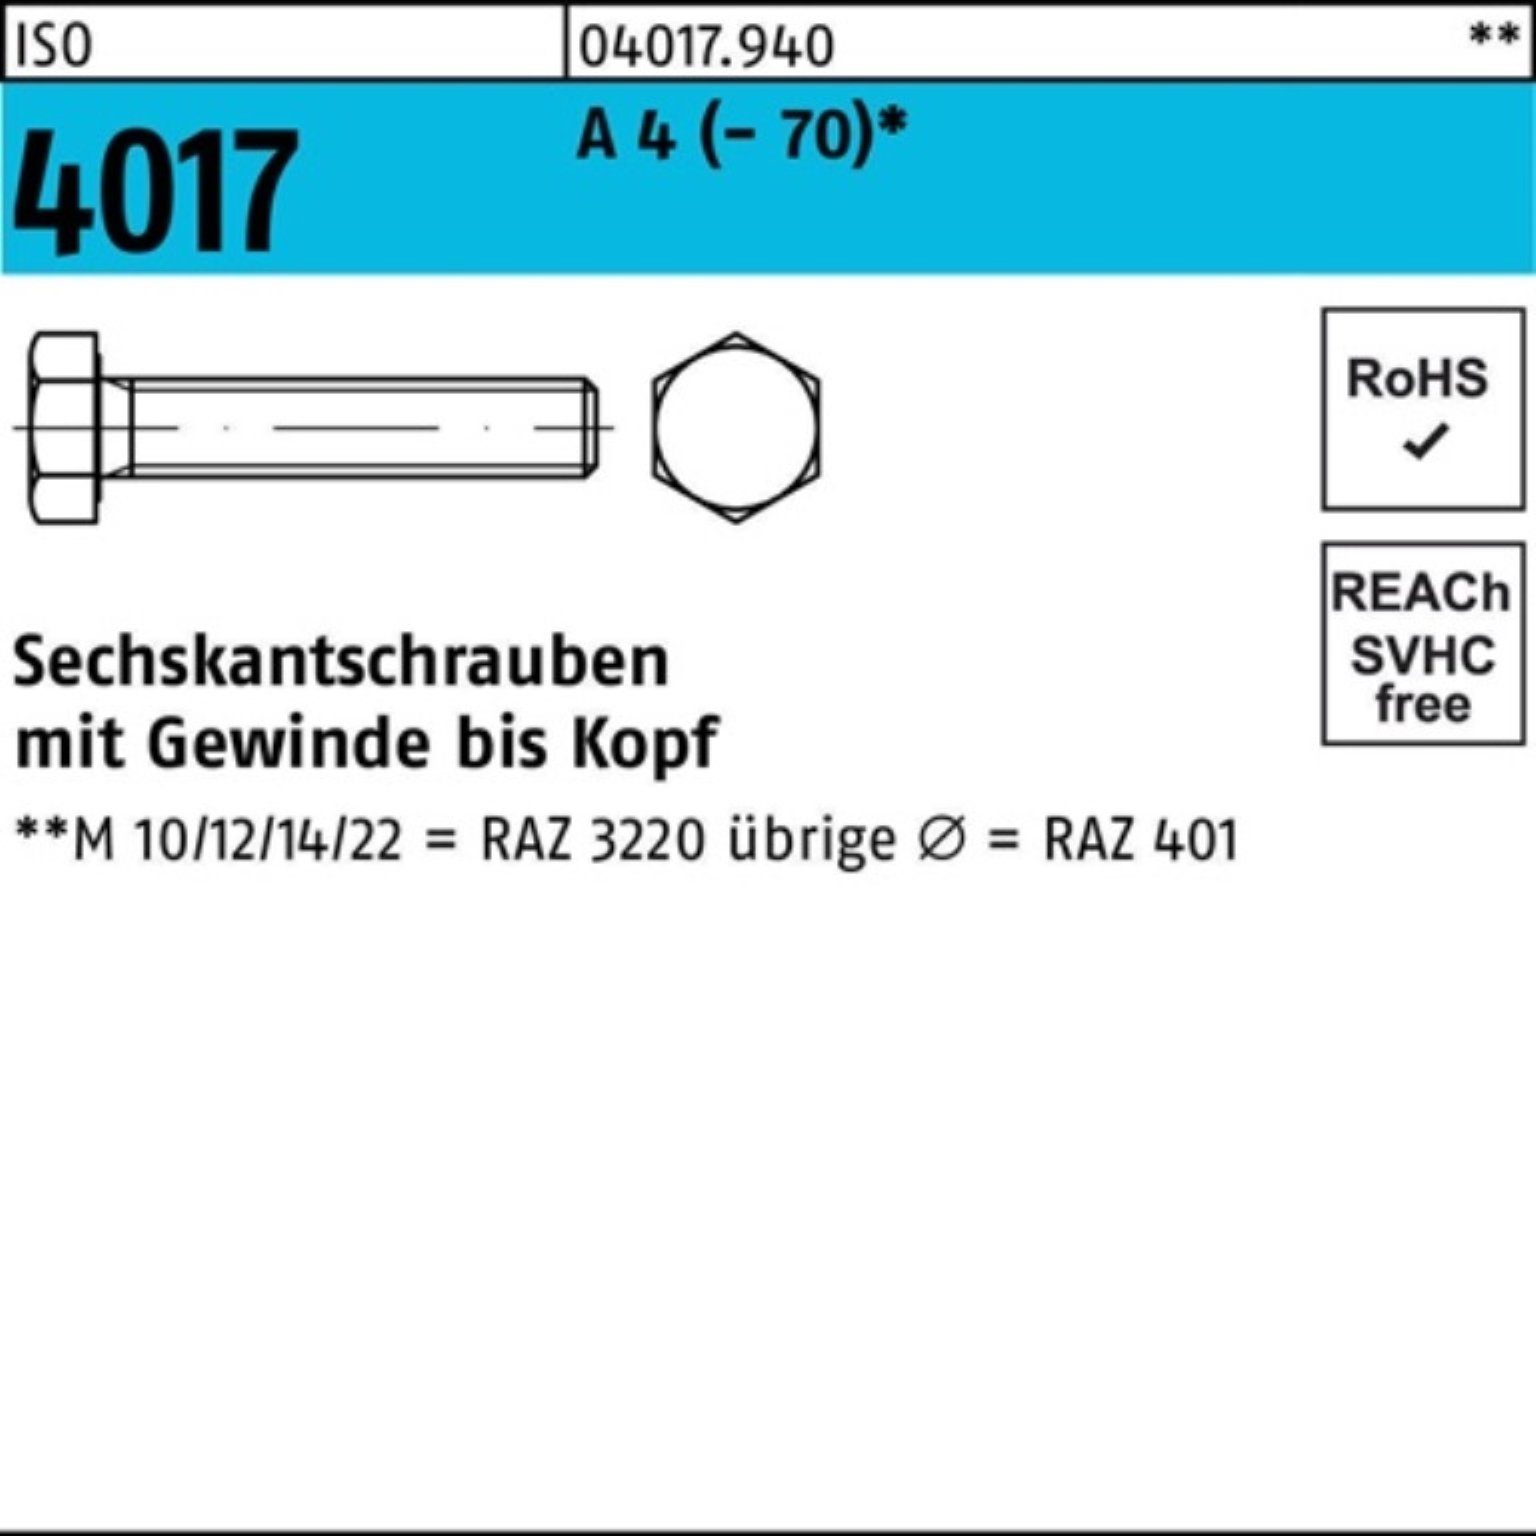 Sechskantschraube 100er 50 I A VG Sechskantschraube 4 M8x (70) 70 4017 Stück Pack Bufab ISO